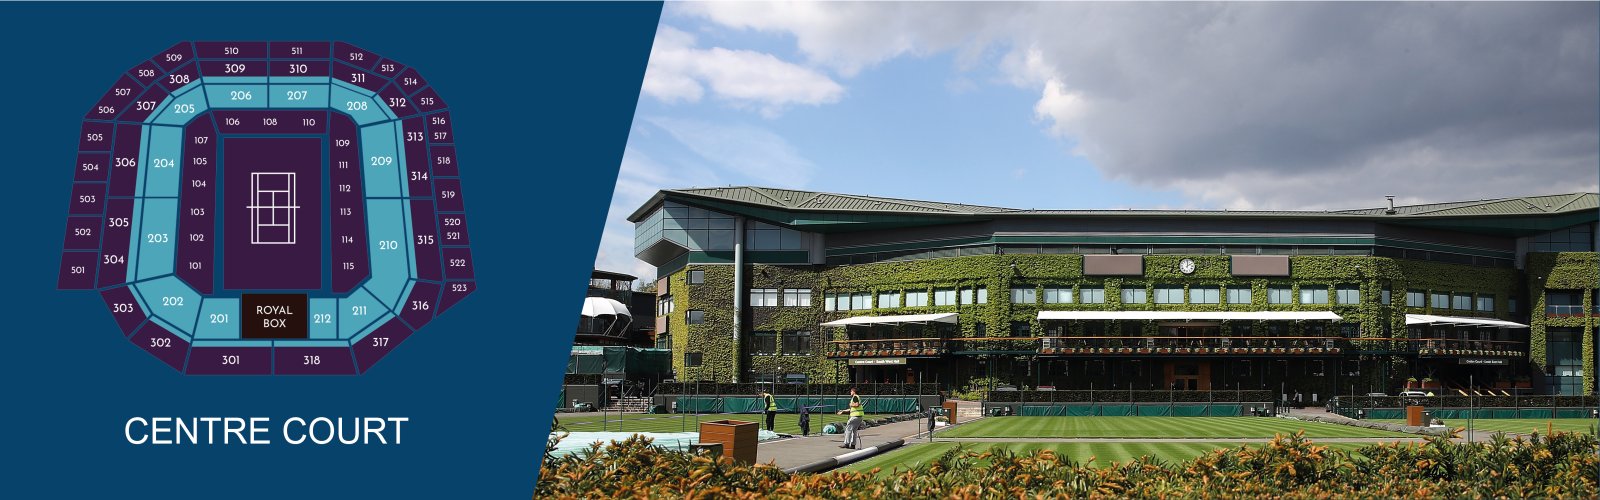 Events International - Wimbledon Centre Court